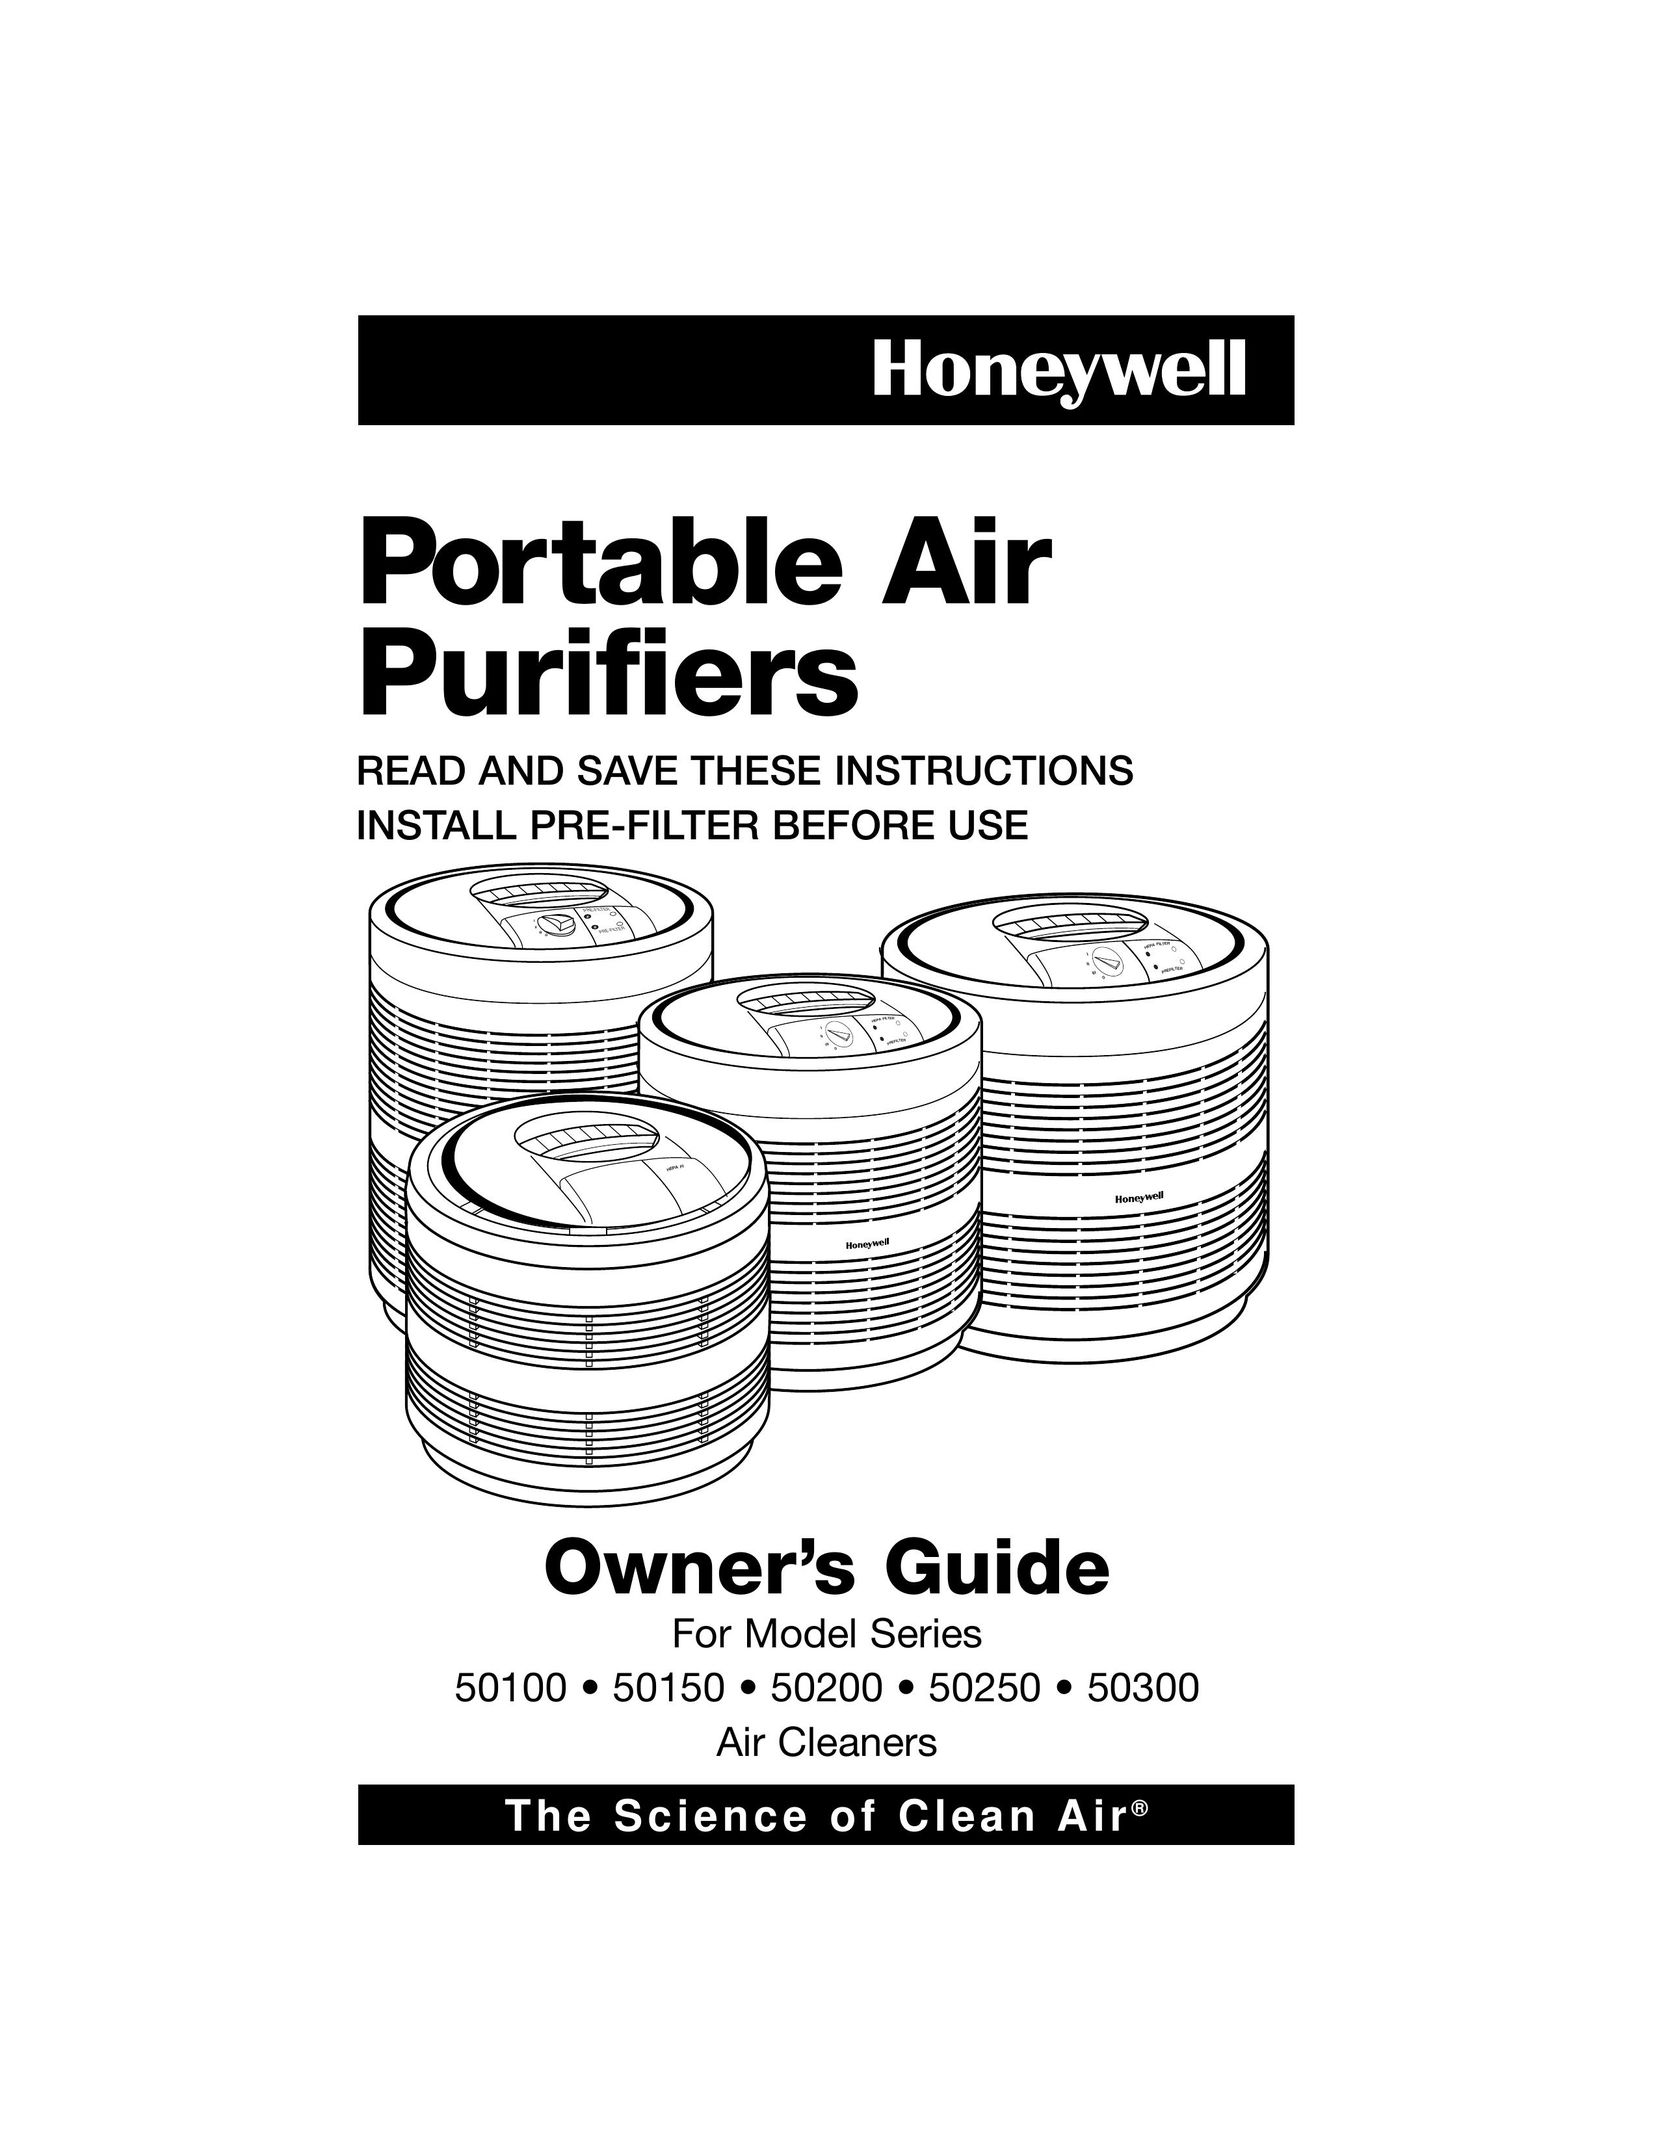 Filtera 50250 Air Cleaner User Manual